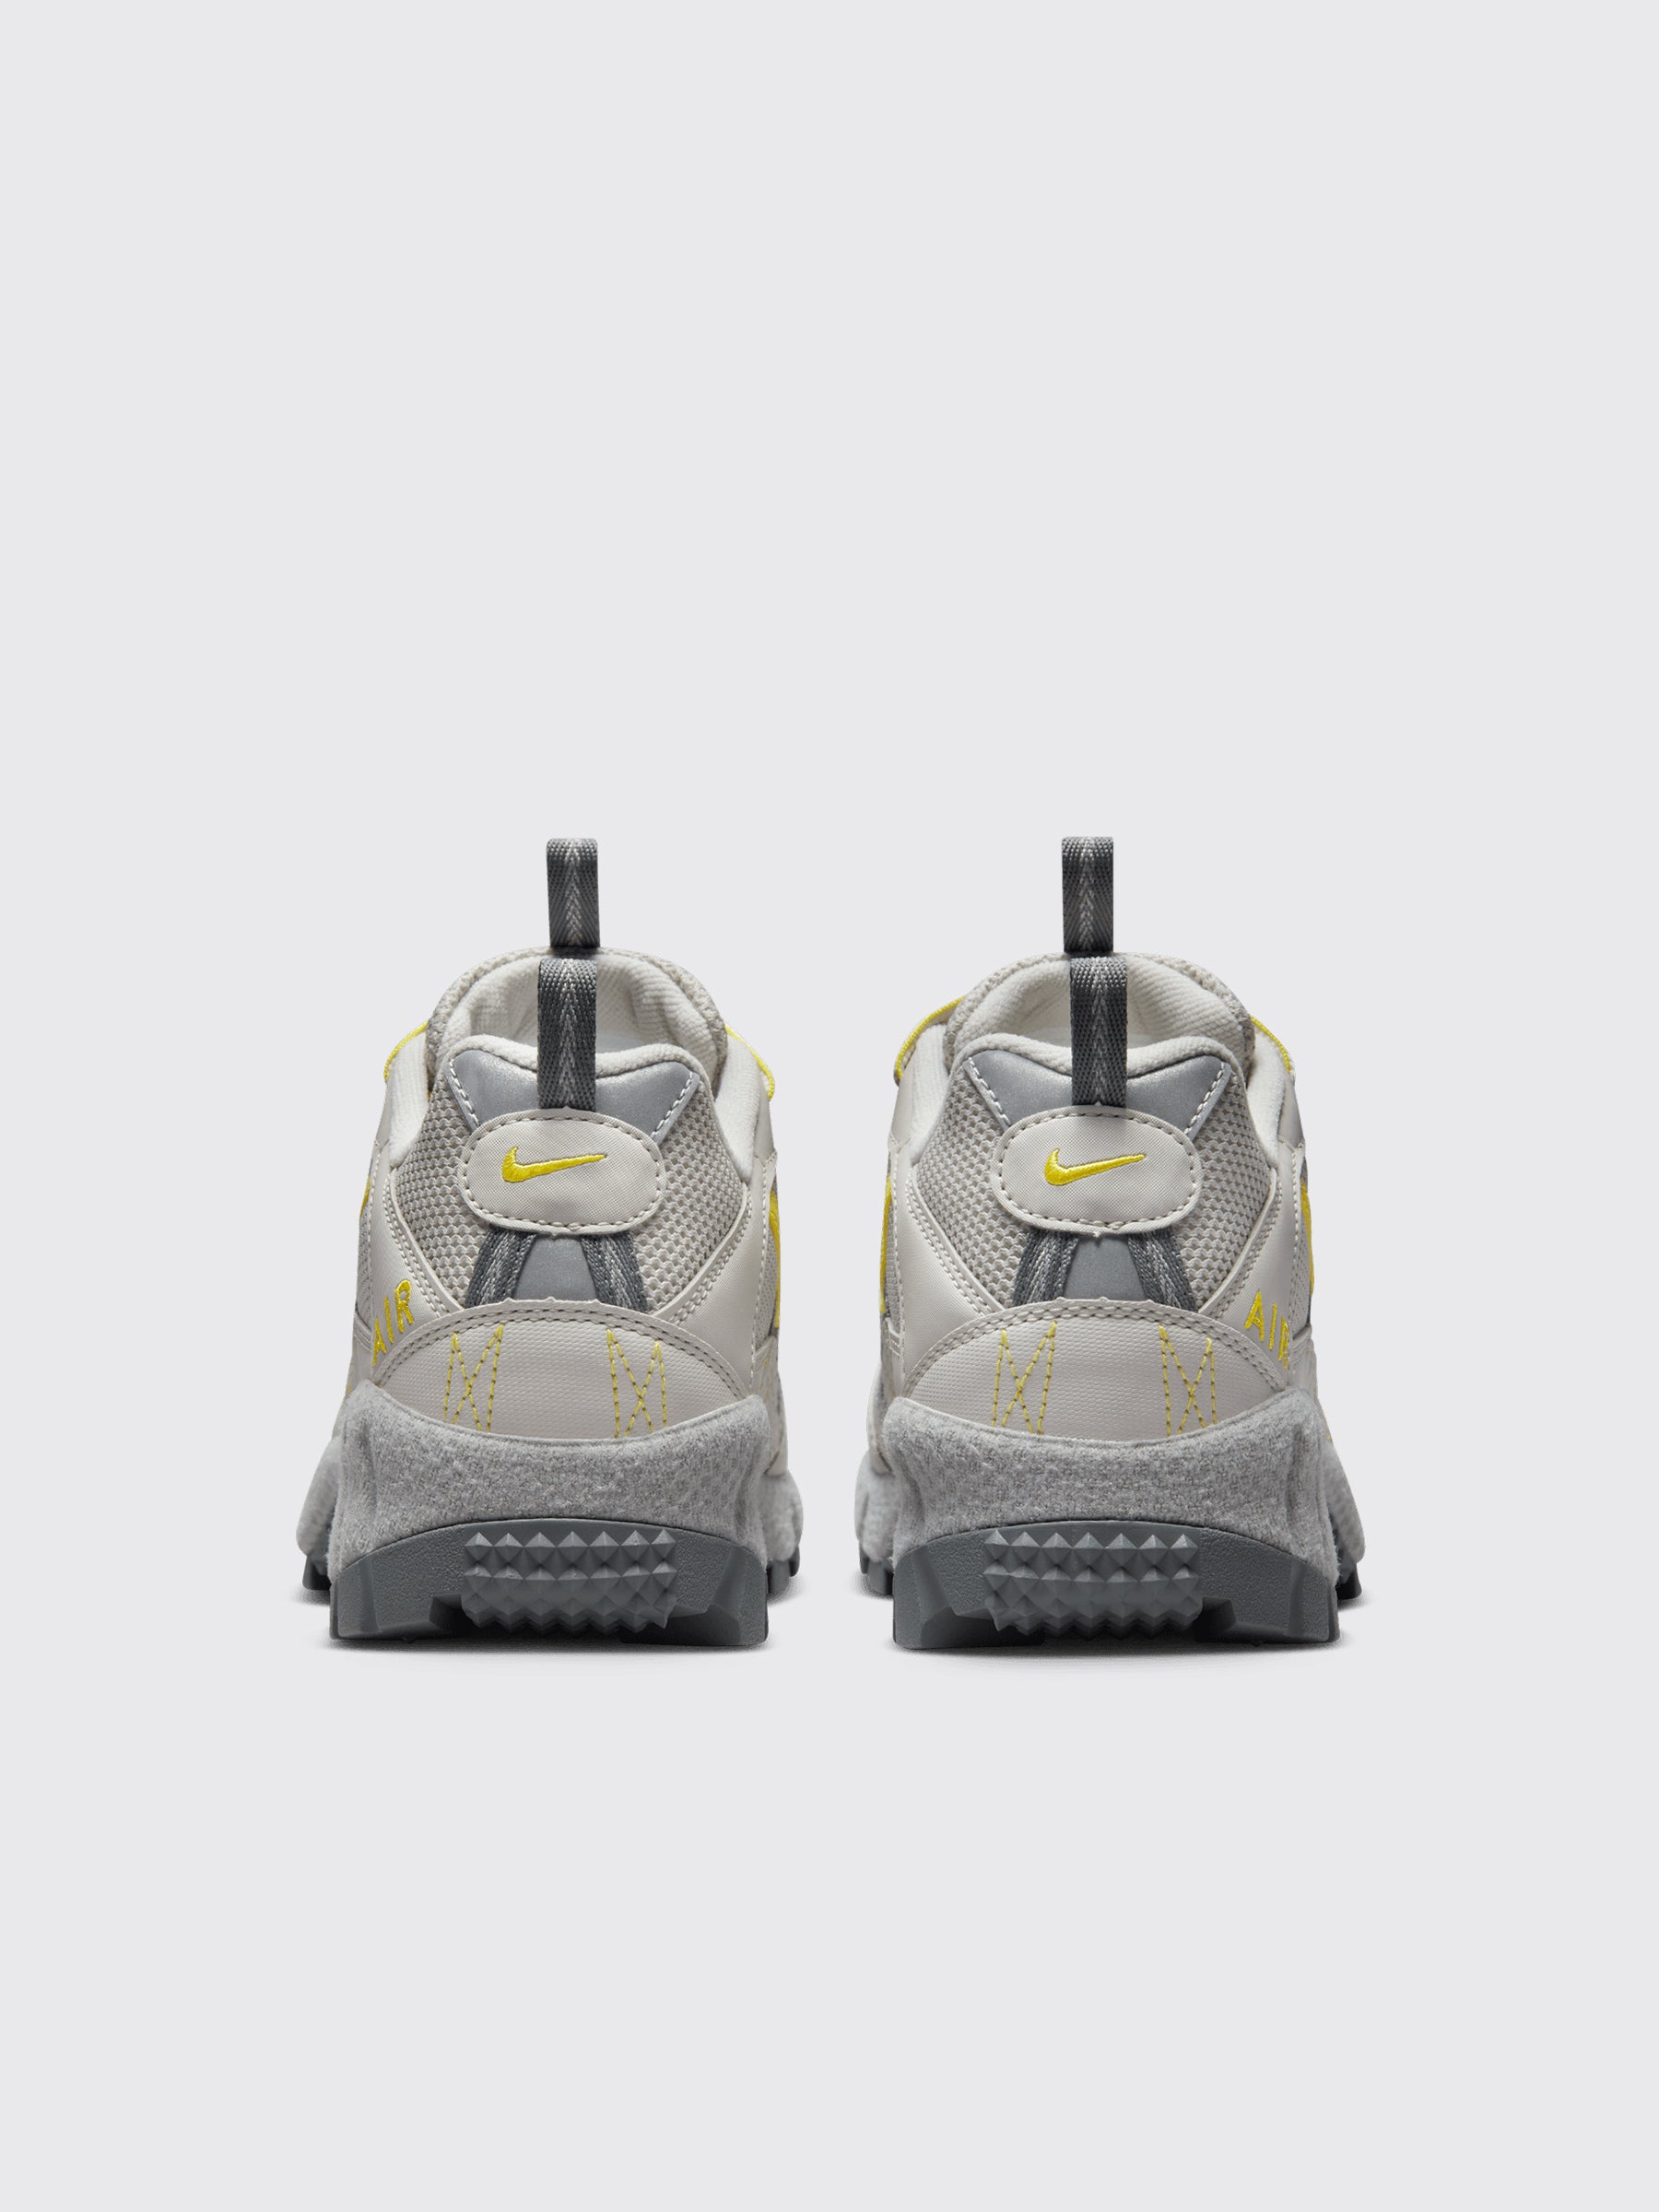 Nike Air Humara QS Light Bone / High Voltage